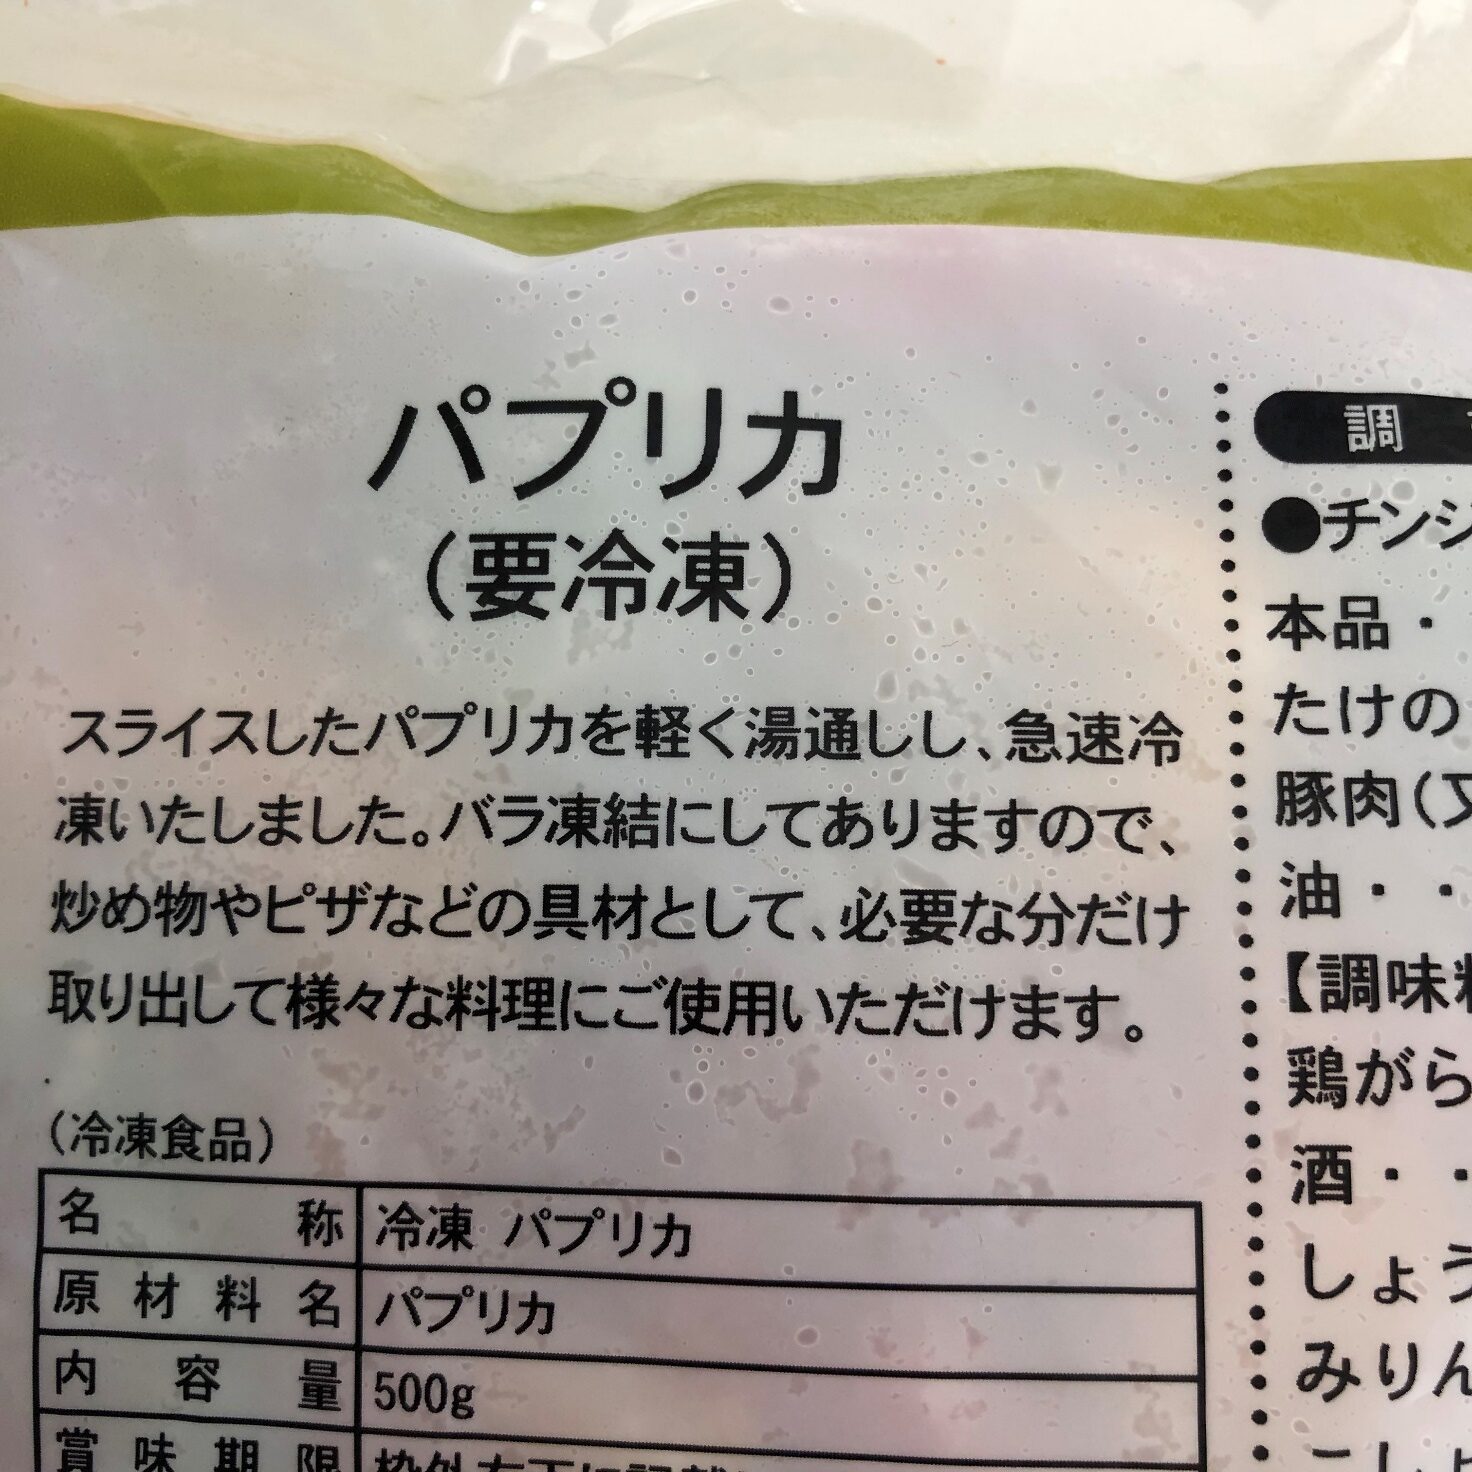 業務スーパーのパプリカのパッケージ裏面に記載されている商品の説明